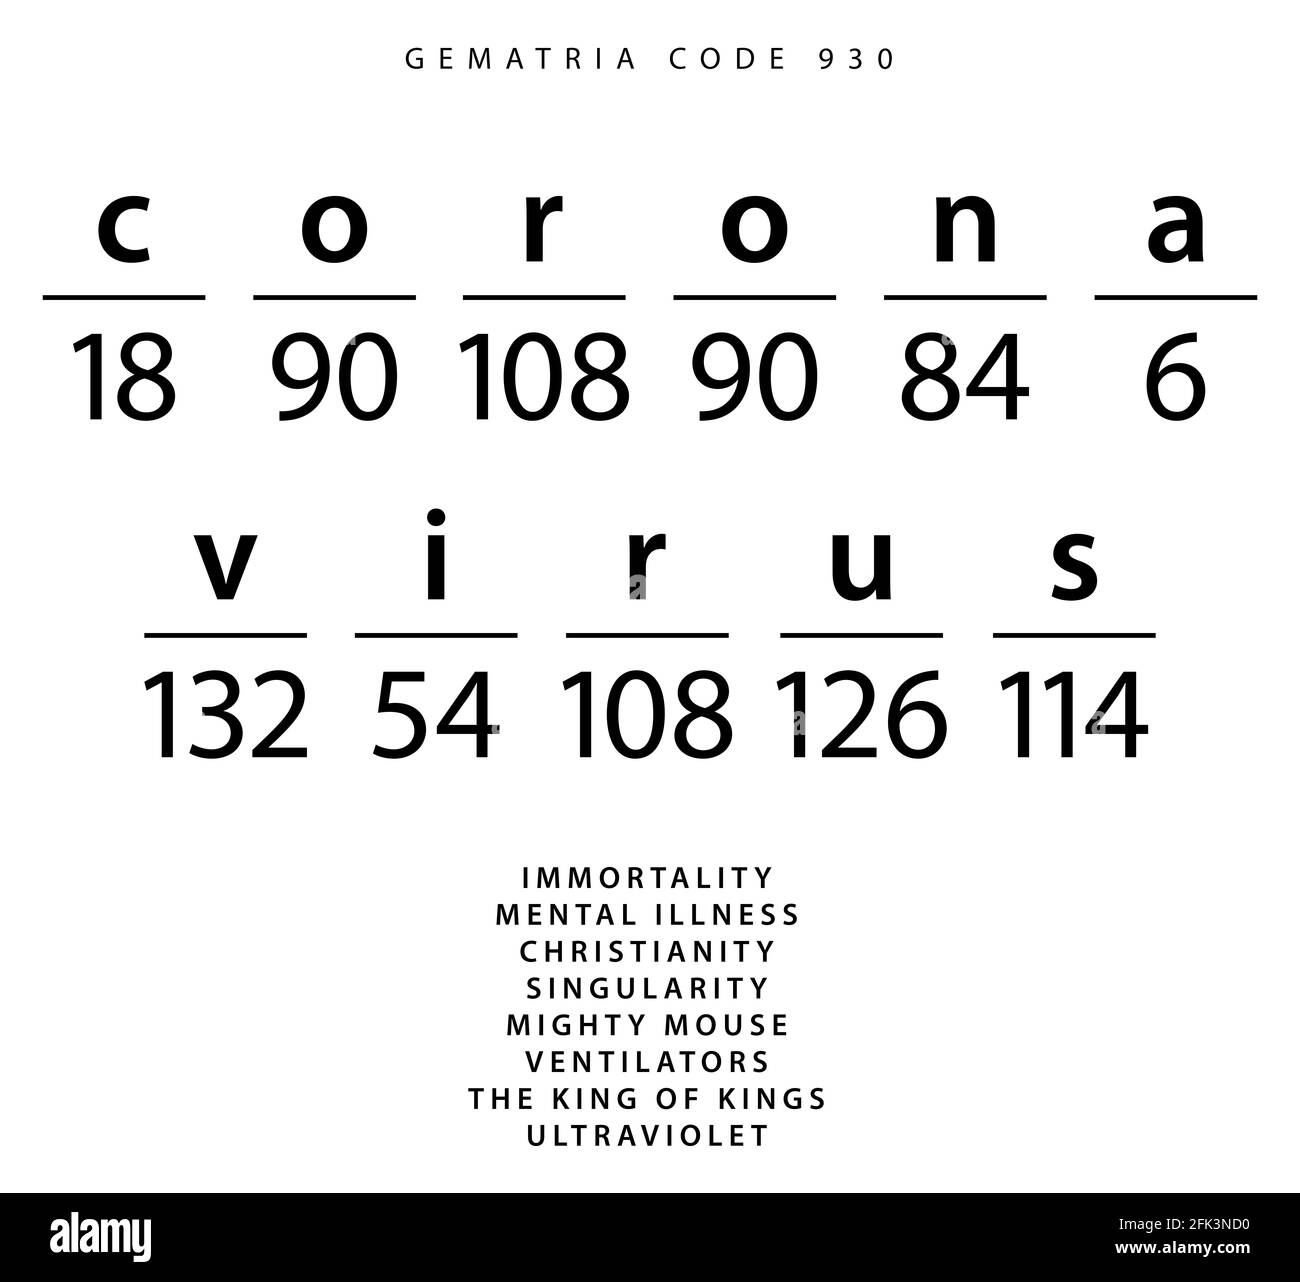 Il codice di parola del coronavirus nel Gematria 4zu3 inglese Foto Stock